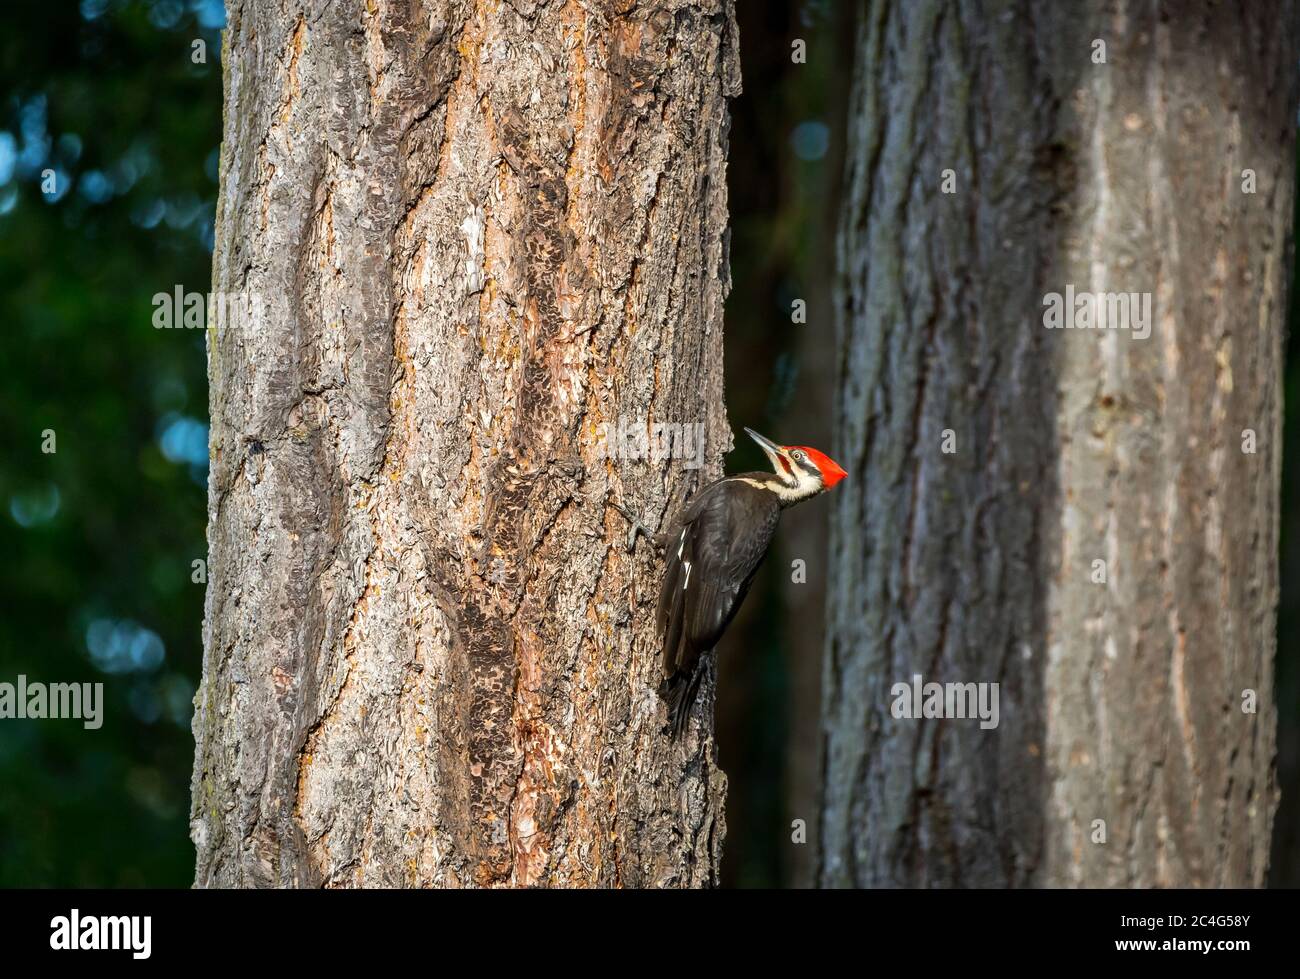 Picchio di legno Pileated ( Hylatomus pileatus ) alla ricerca di cibo sull'isola di Vancouver, Canada. Foto Stock